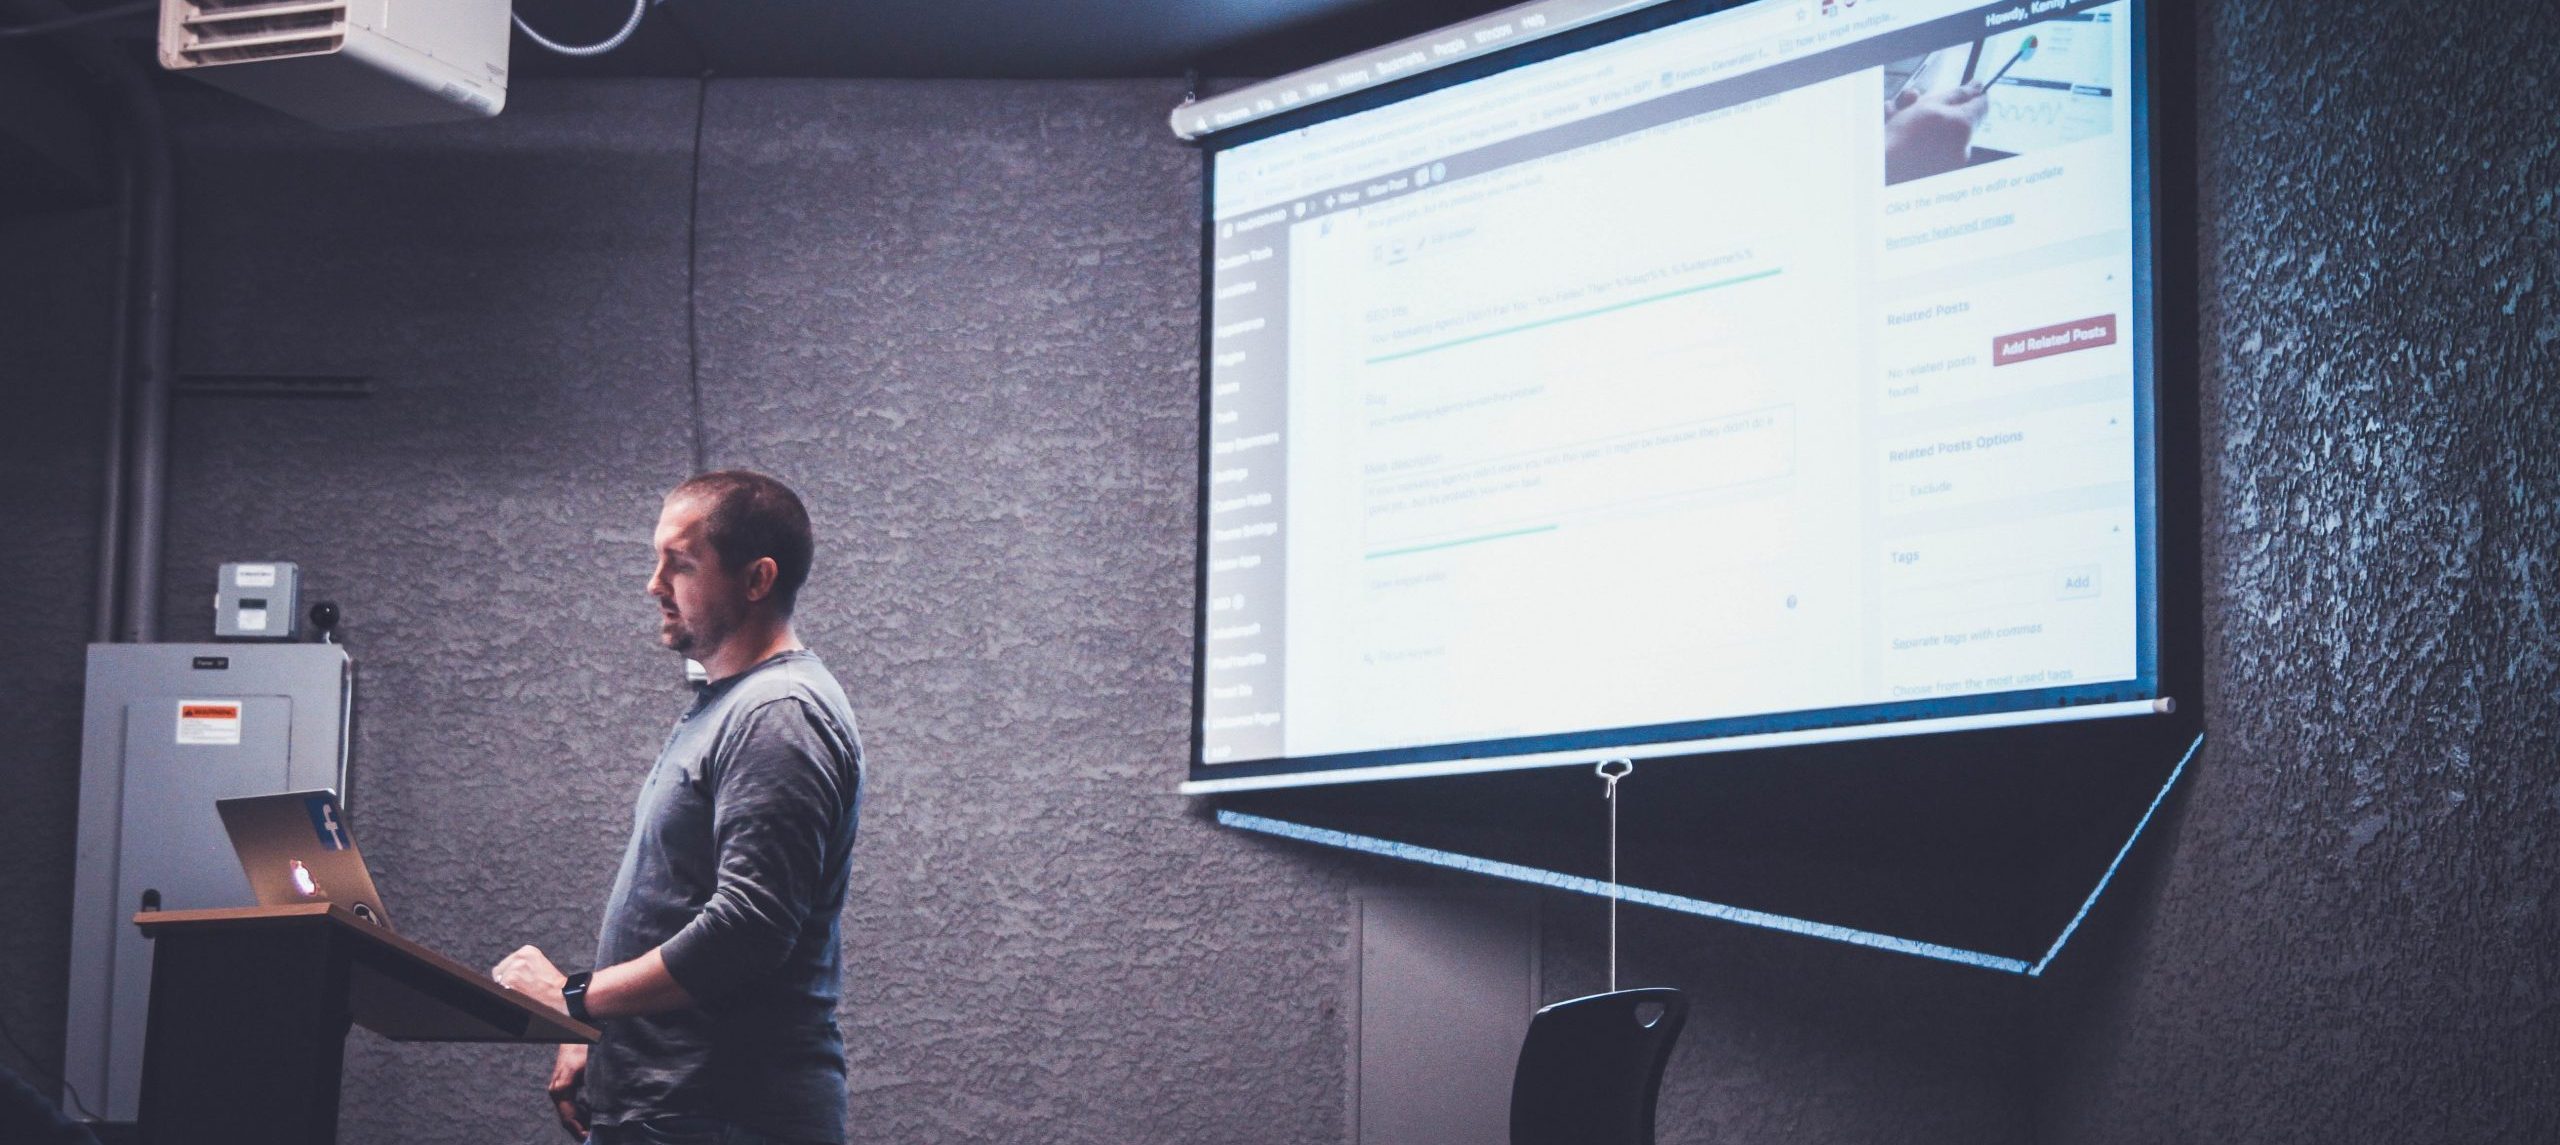 Een persoon staat bij een laptop met een projectiescherm op de achtergrond, waarop een presentatie over PowerPoint en SCORM staat.